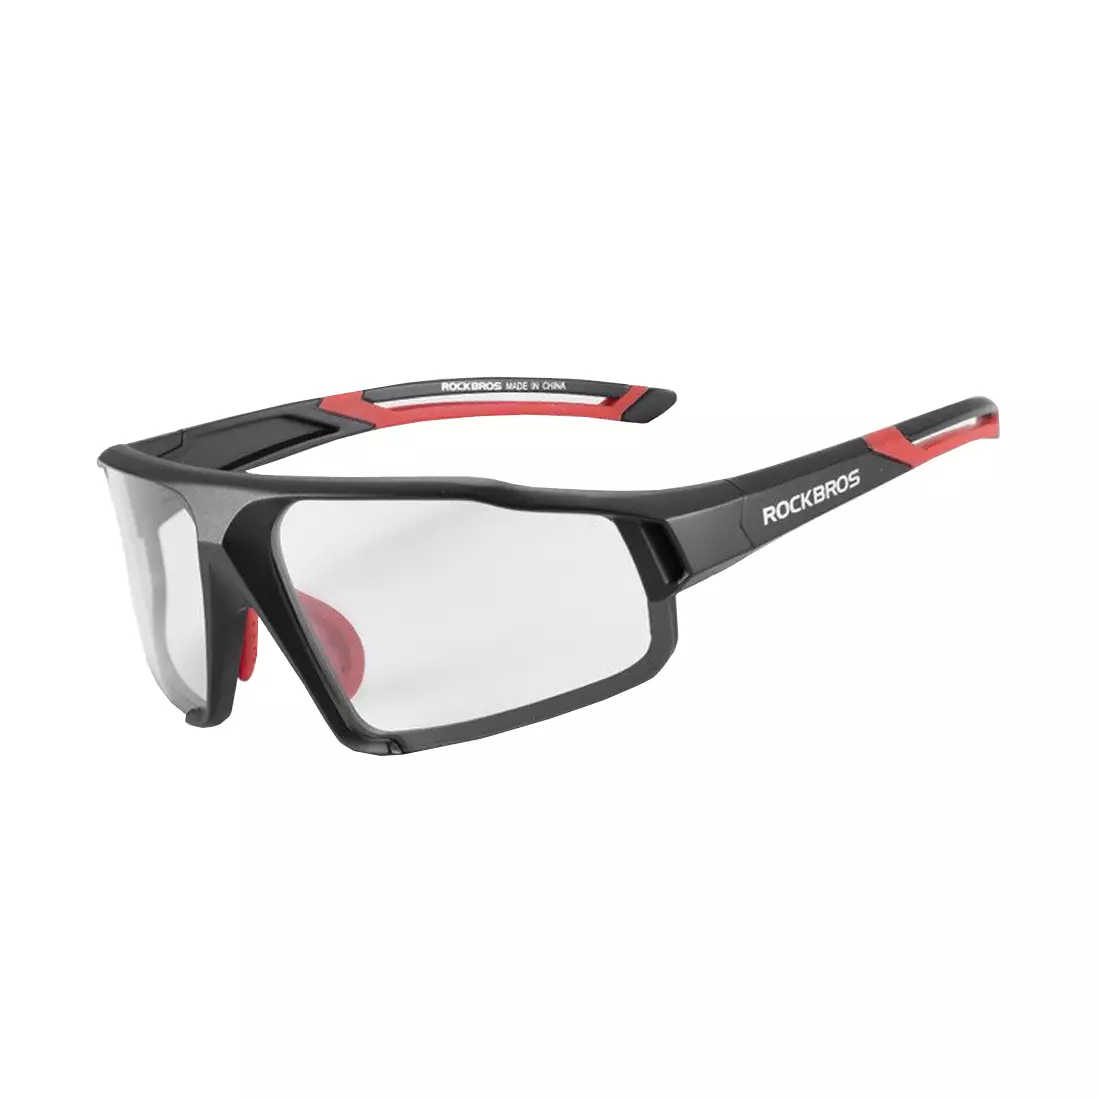 Rockbros SP216BK ochelari fotocromici pentru ciclism / sport negru-roșu